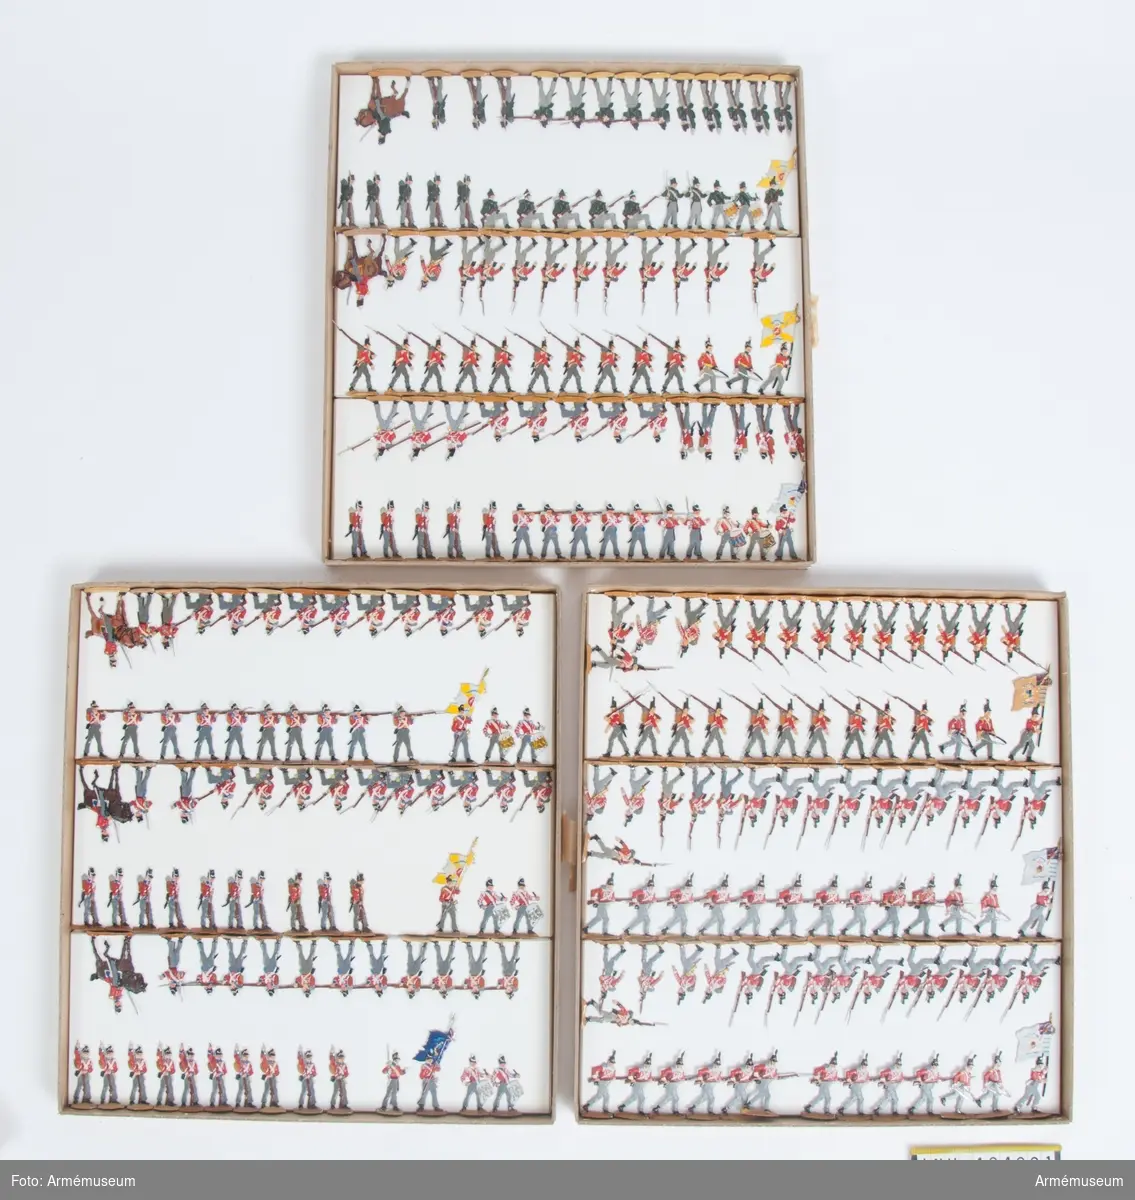 Infanteri och jägare från Storbritannien från Napoleonkrigen.
Tre lådor med figurer.
Fabriksmålade.